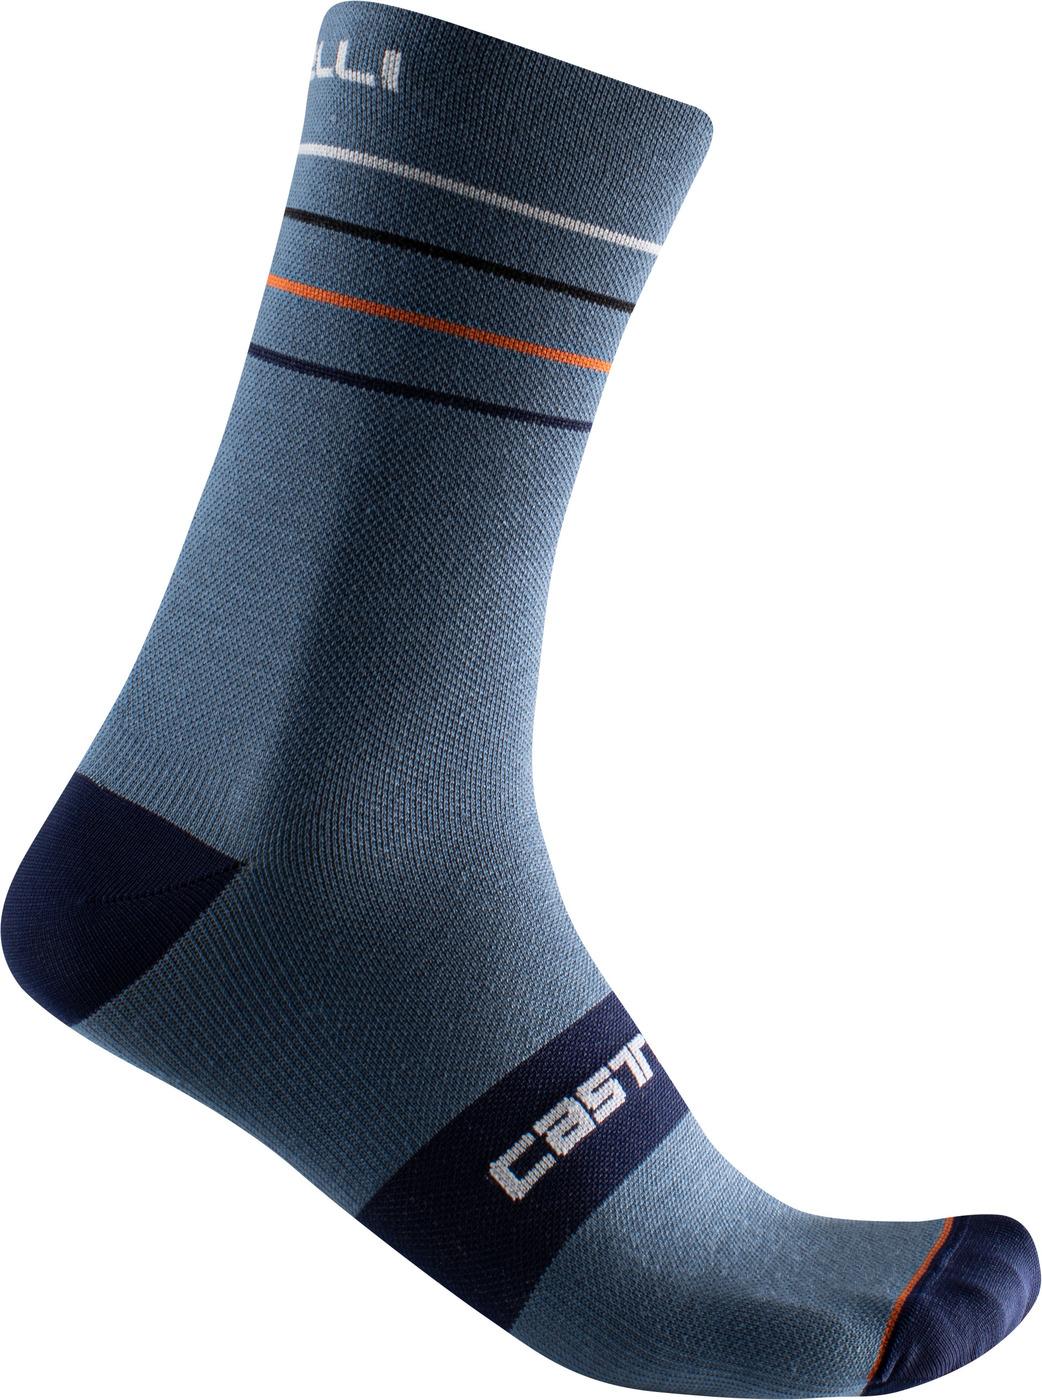 Castelli Endurance 15 Sock  Light Steel Blue/pop Orange/white